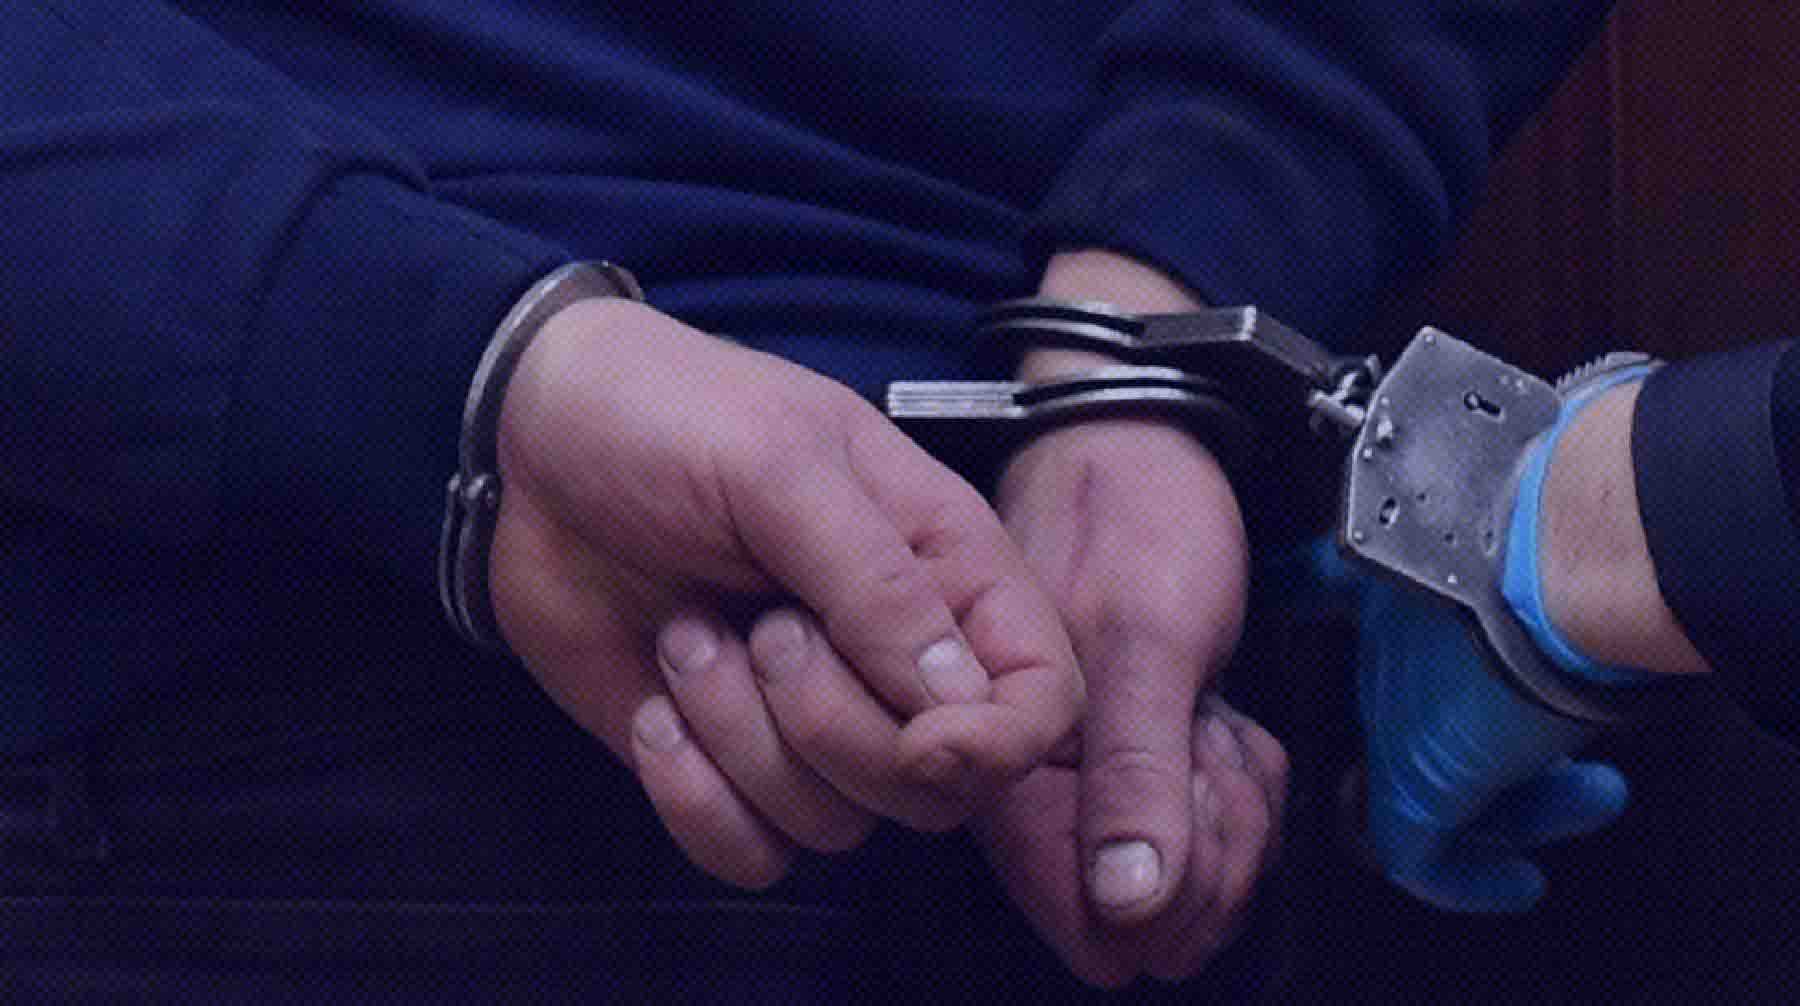 Dailystorm - В Сочи задержали подростка из «Колумбайна», который публиковал фейки о терактах в школах